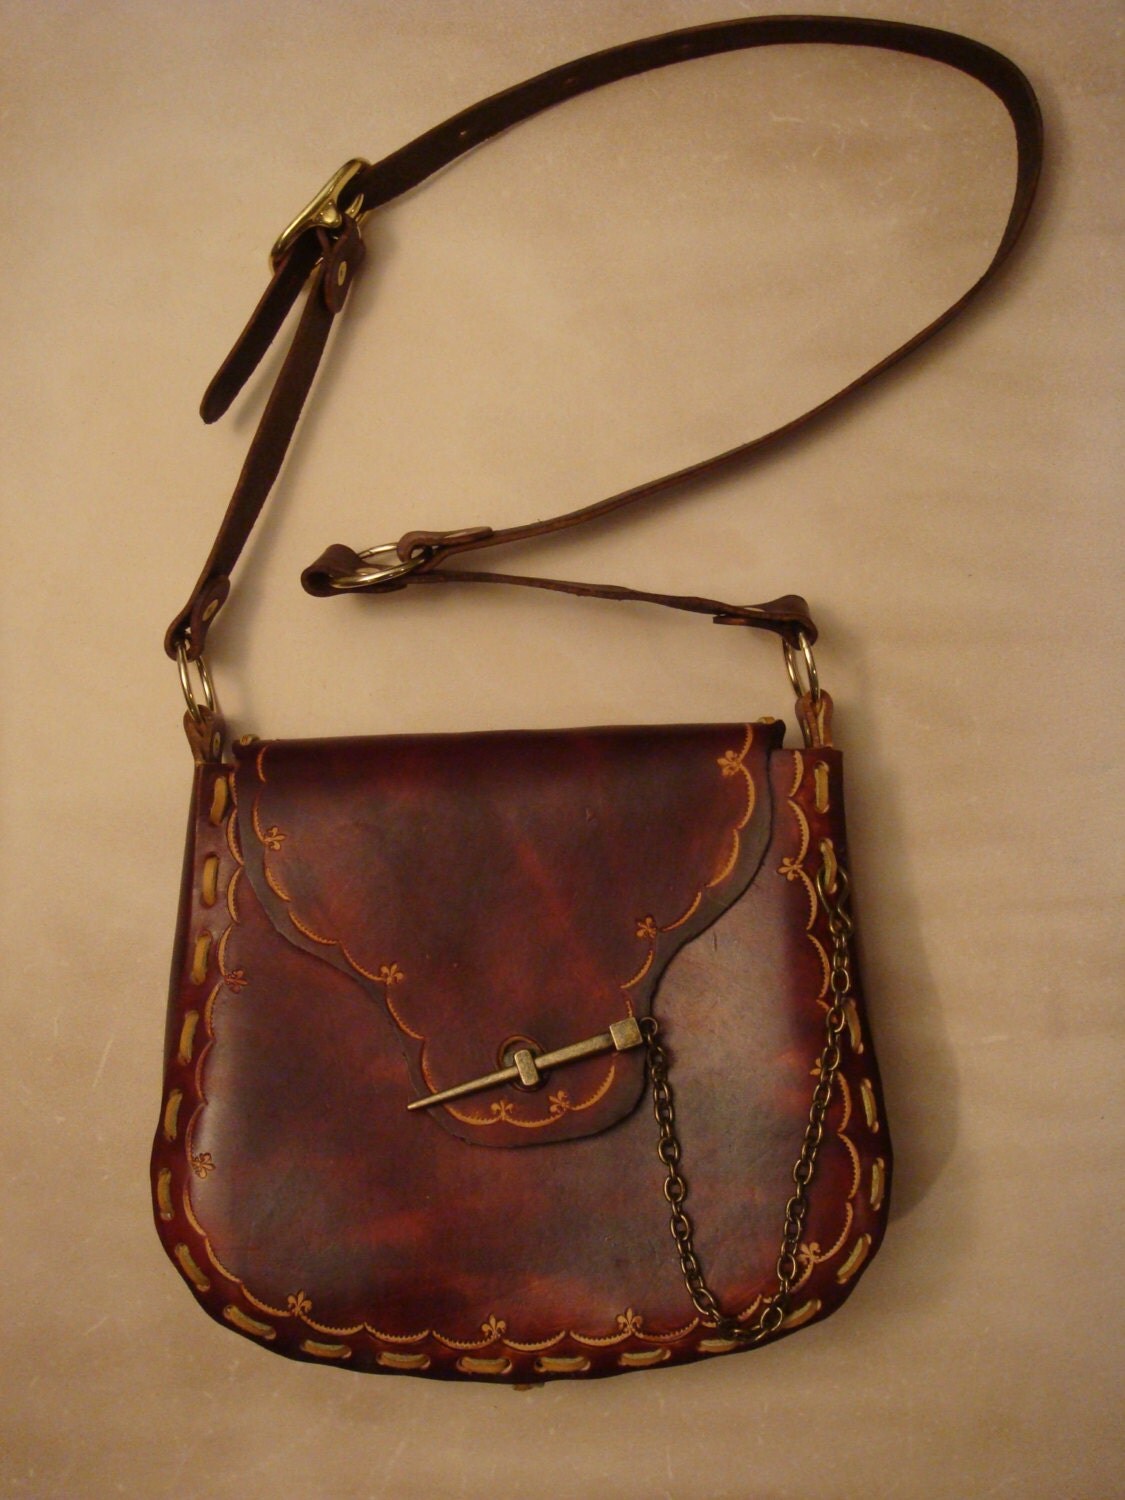 Kim Tooled Brown Leather Crossbody Bag Shoulder Bag Purse